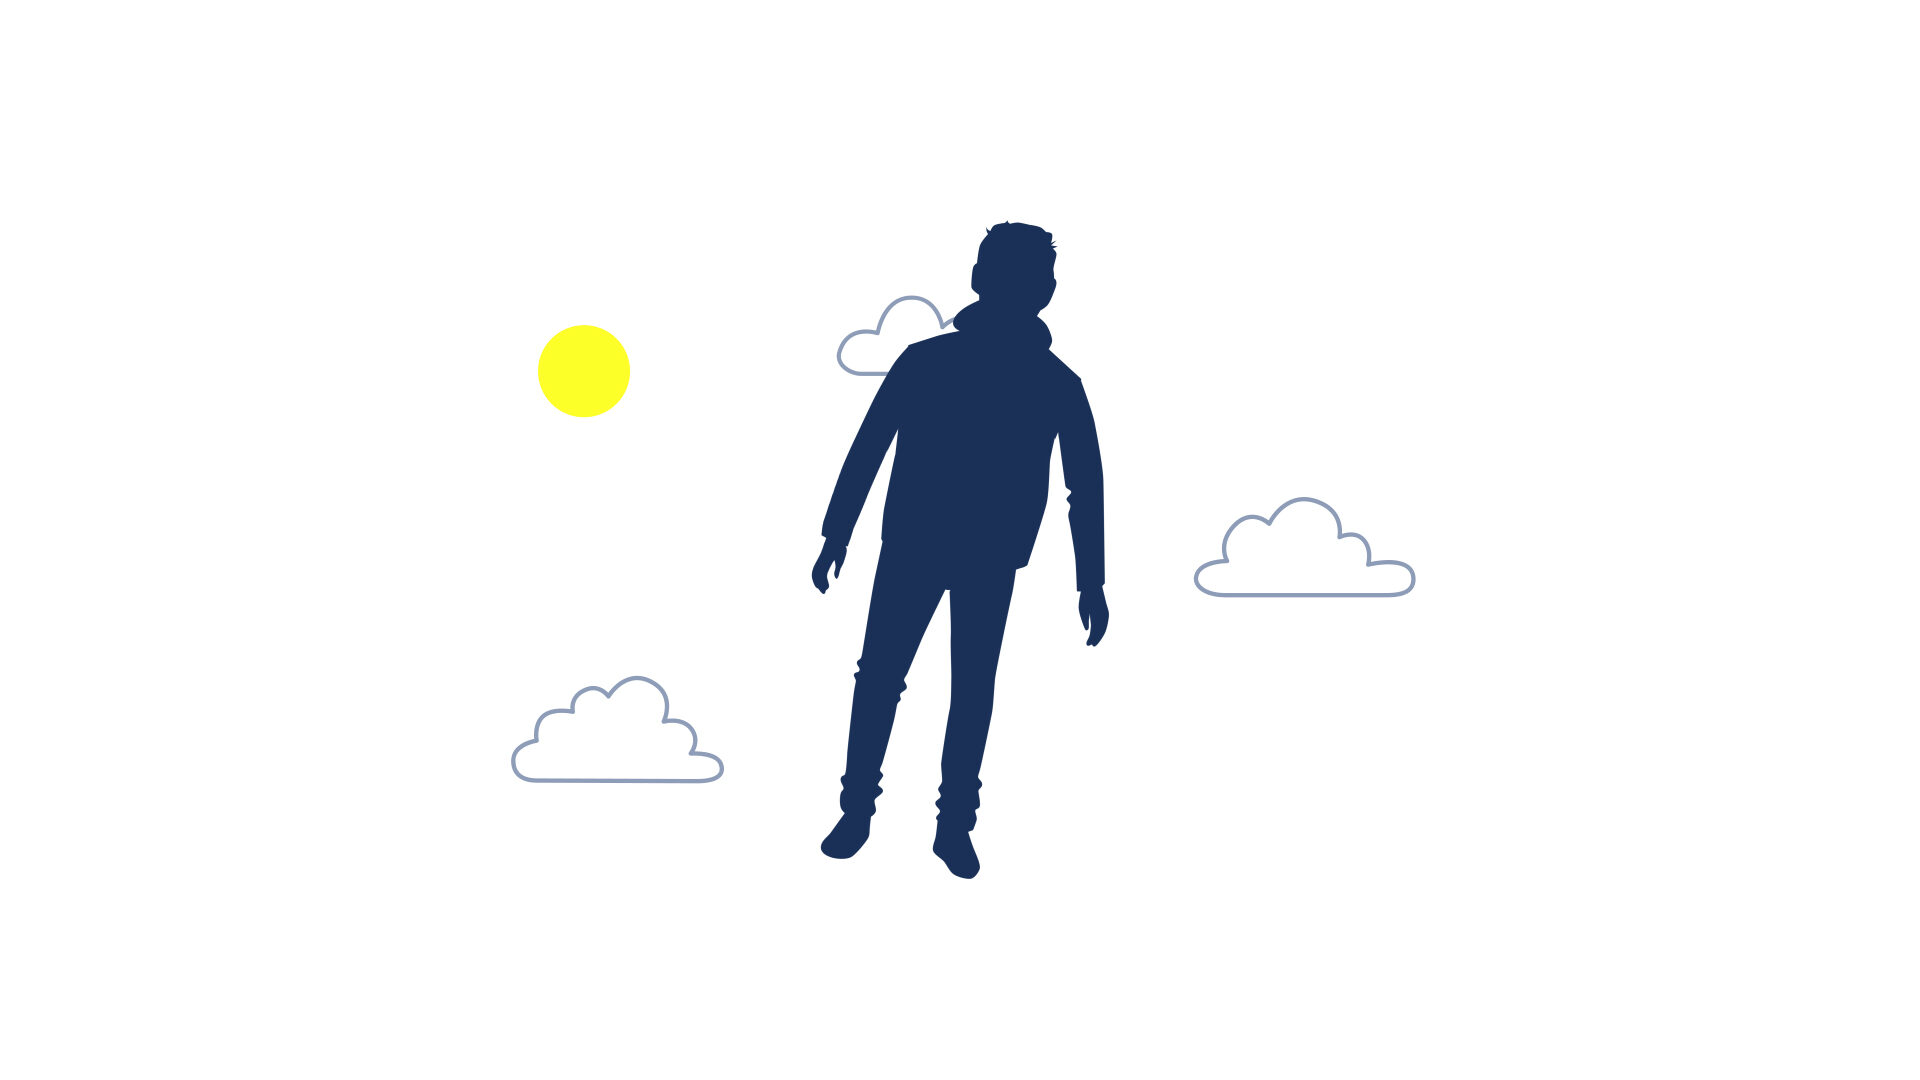 Videoframe: Silhouette einer Person, die im Himmel schwebt